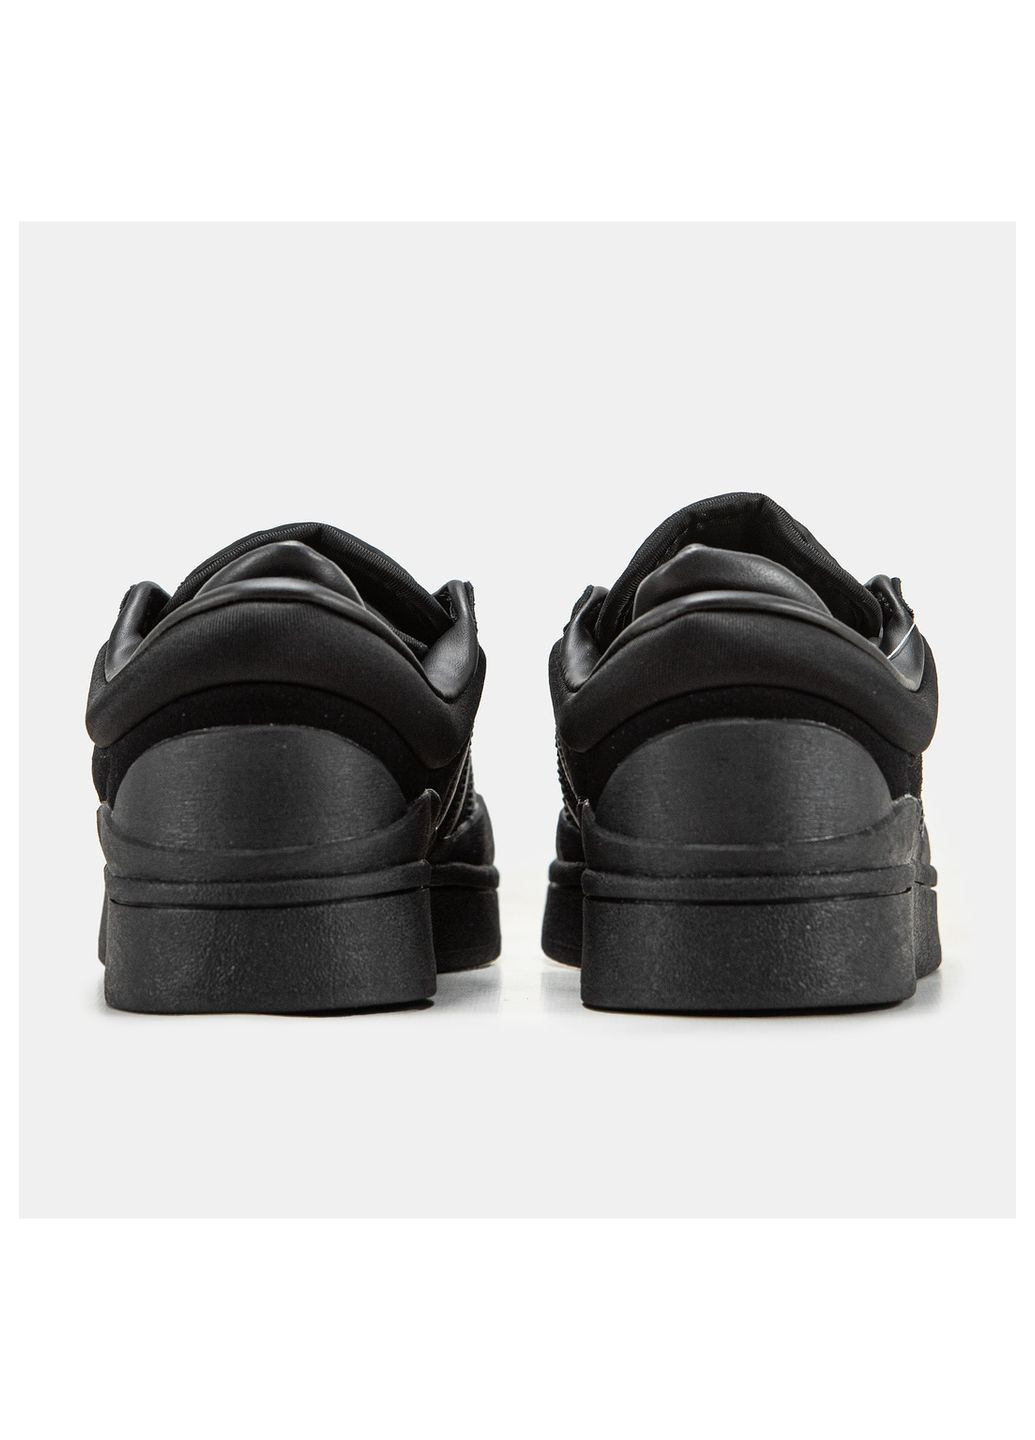 Черные кроссовки унисекс adidas Campus x Bad Banny Black